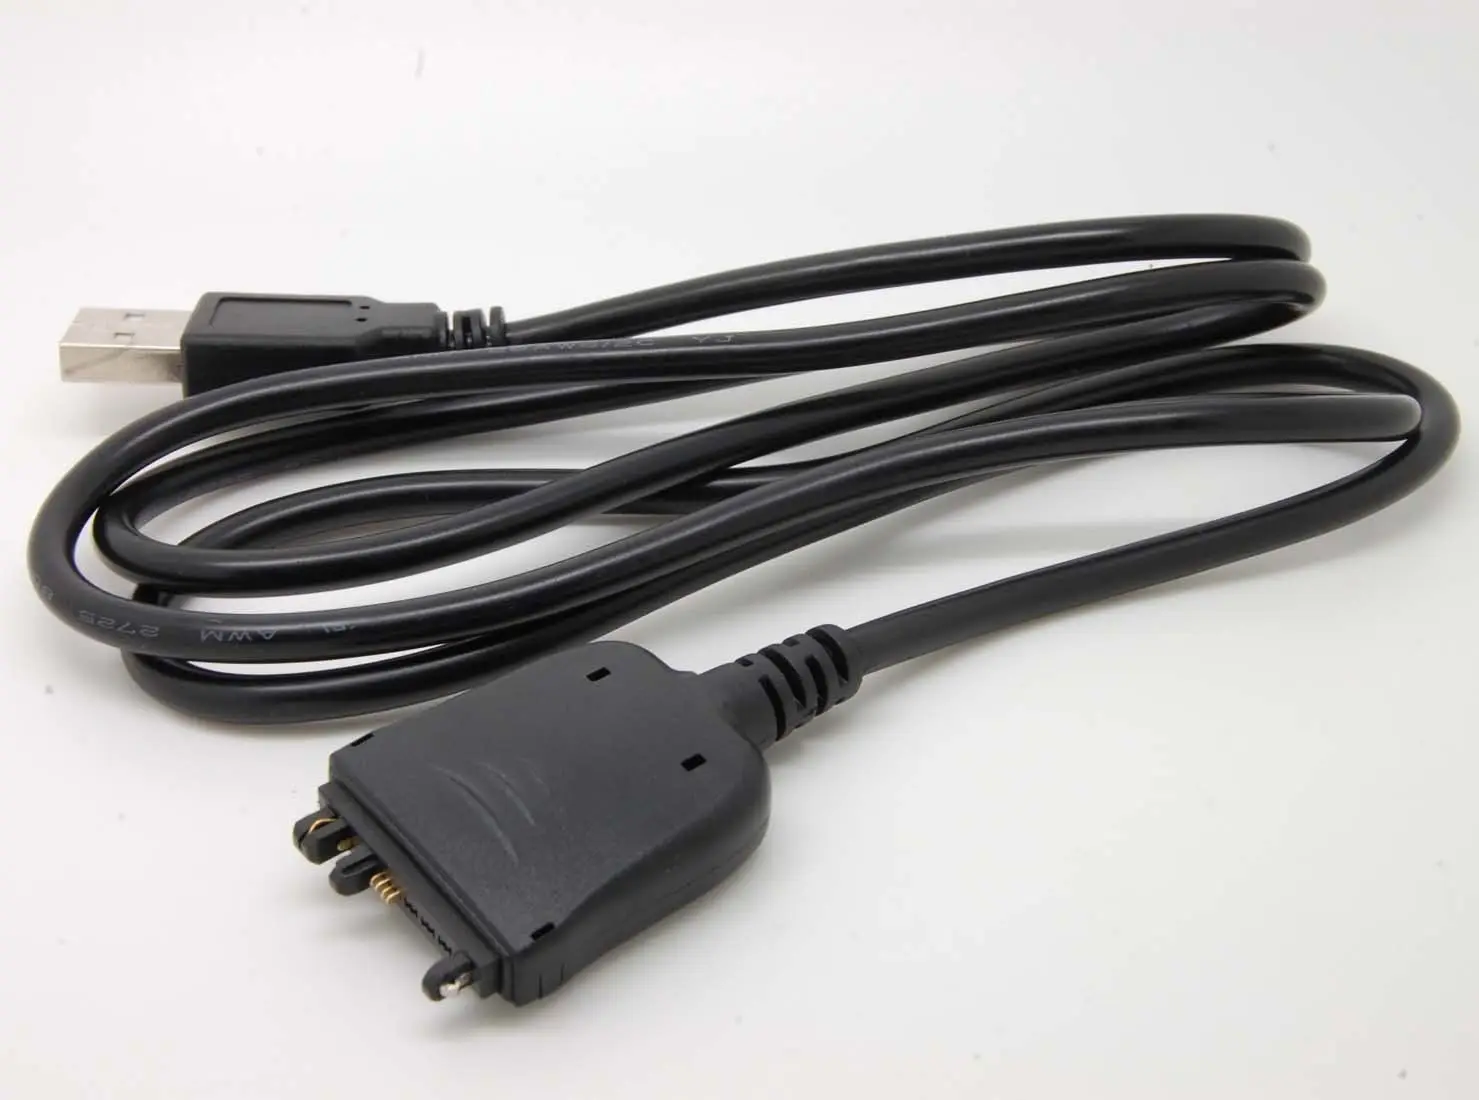 USB кабель для синхронизации данных и зарядного устройства для ладони 685 690 Вольфрам E2 e5 pda Палм трео 650 680 700w 700p 700w x 750v 755p LifeDrive